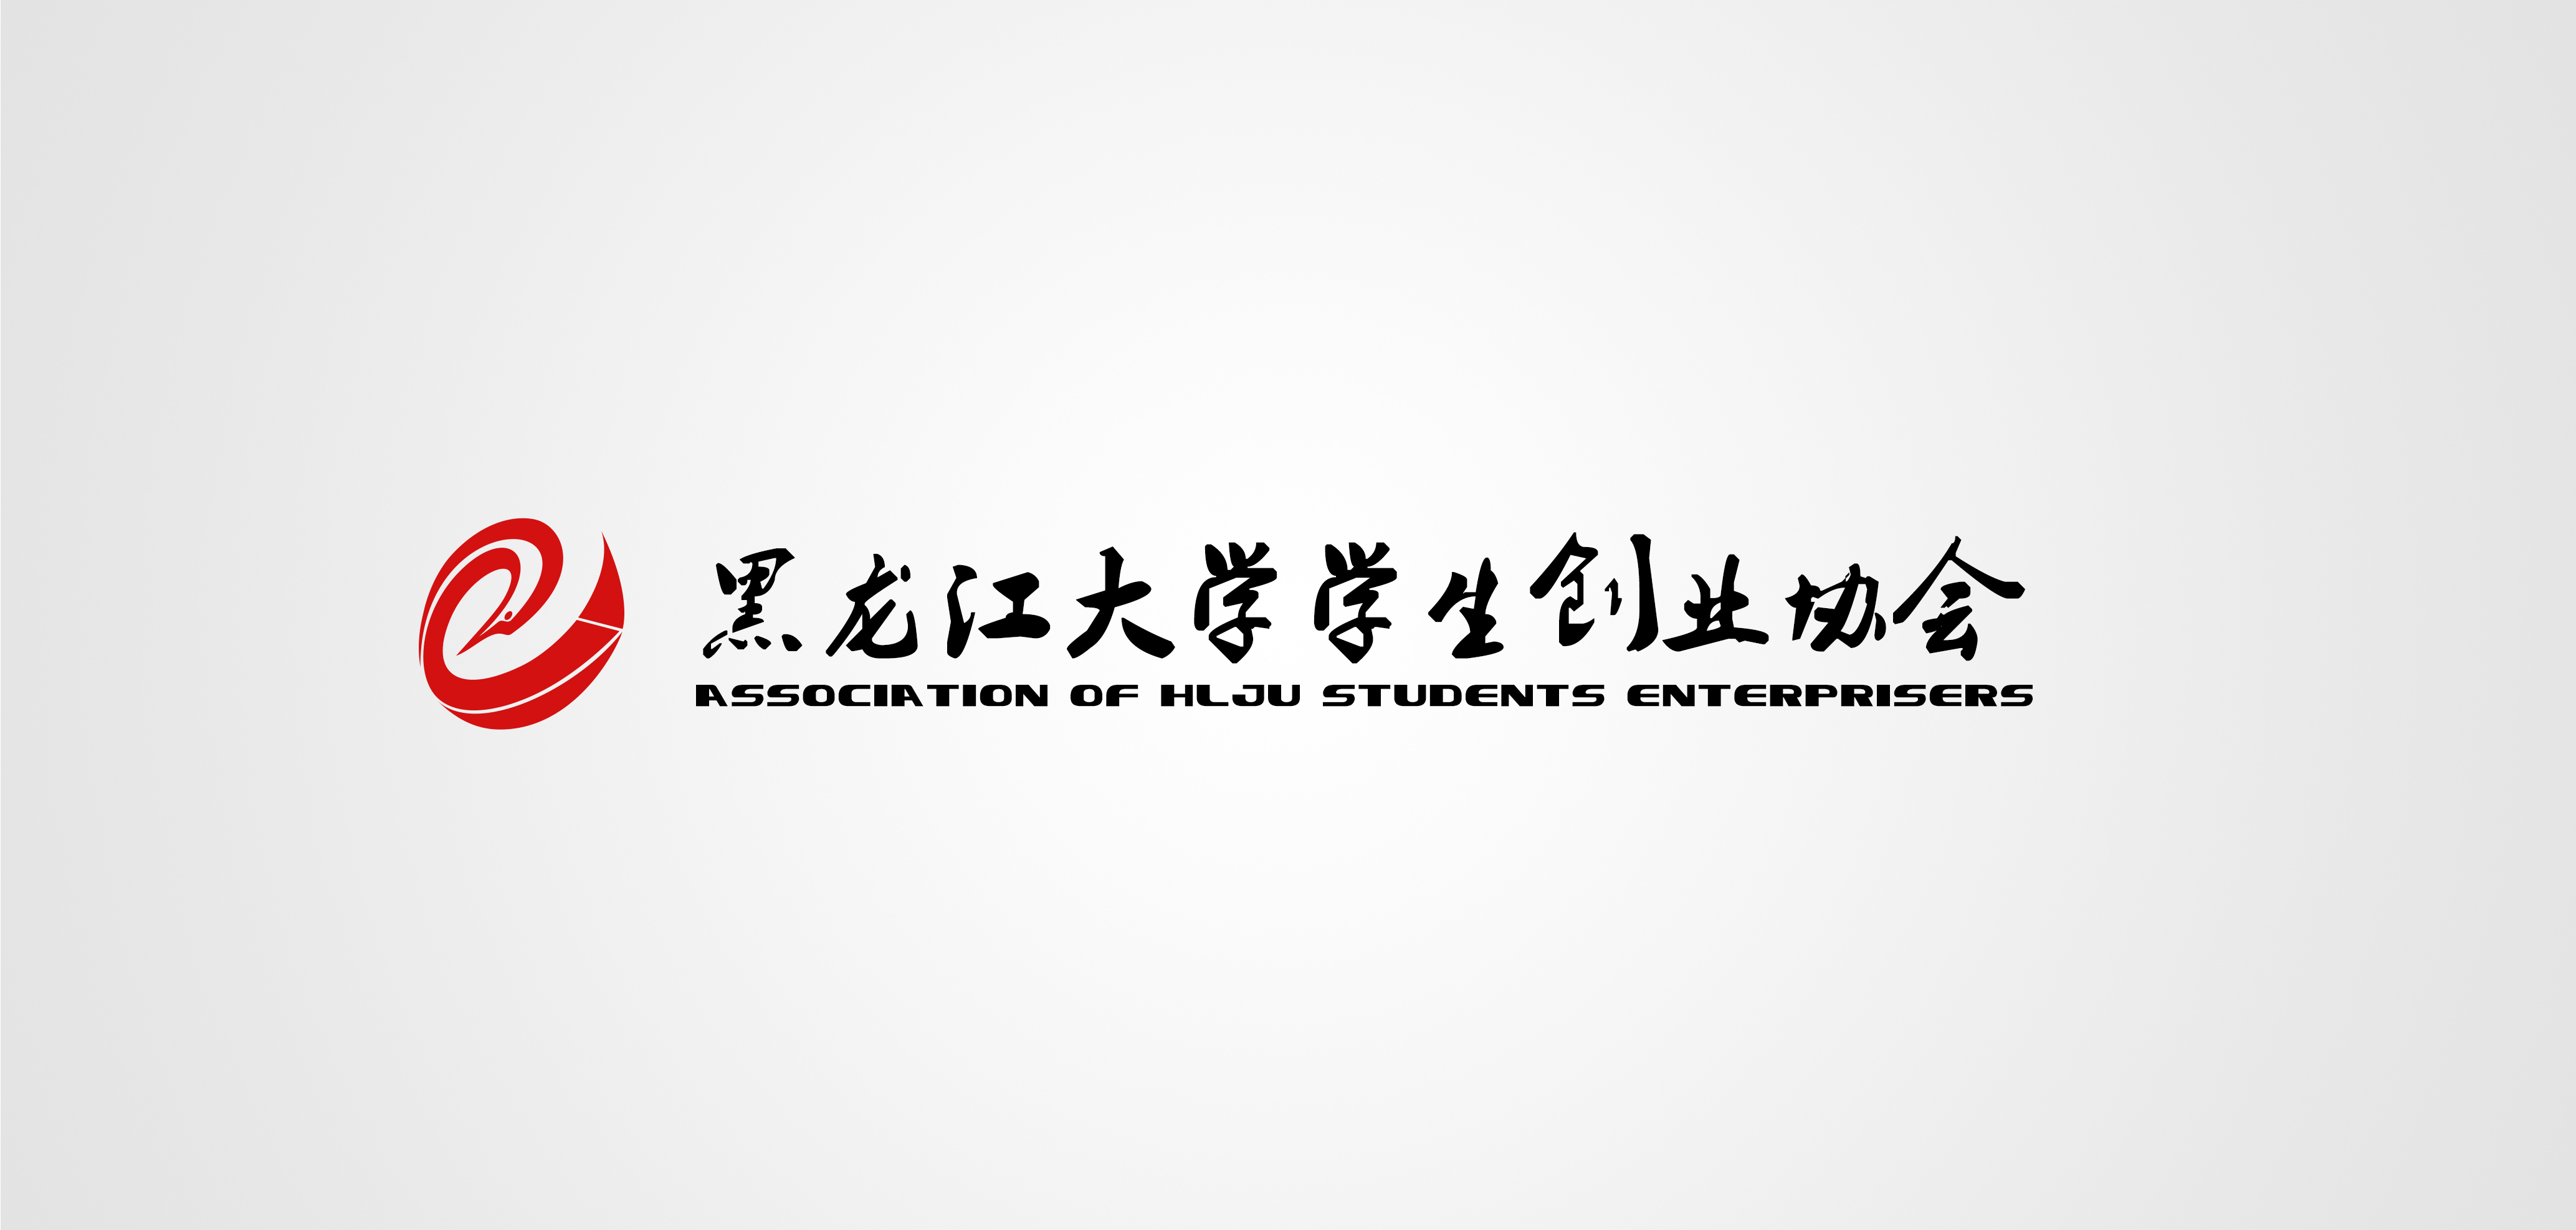 黑龍江大學學生創業協會